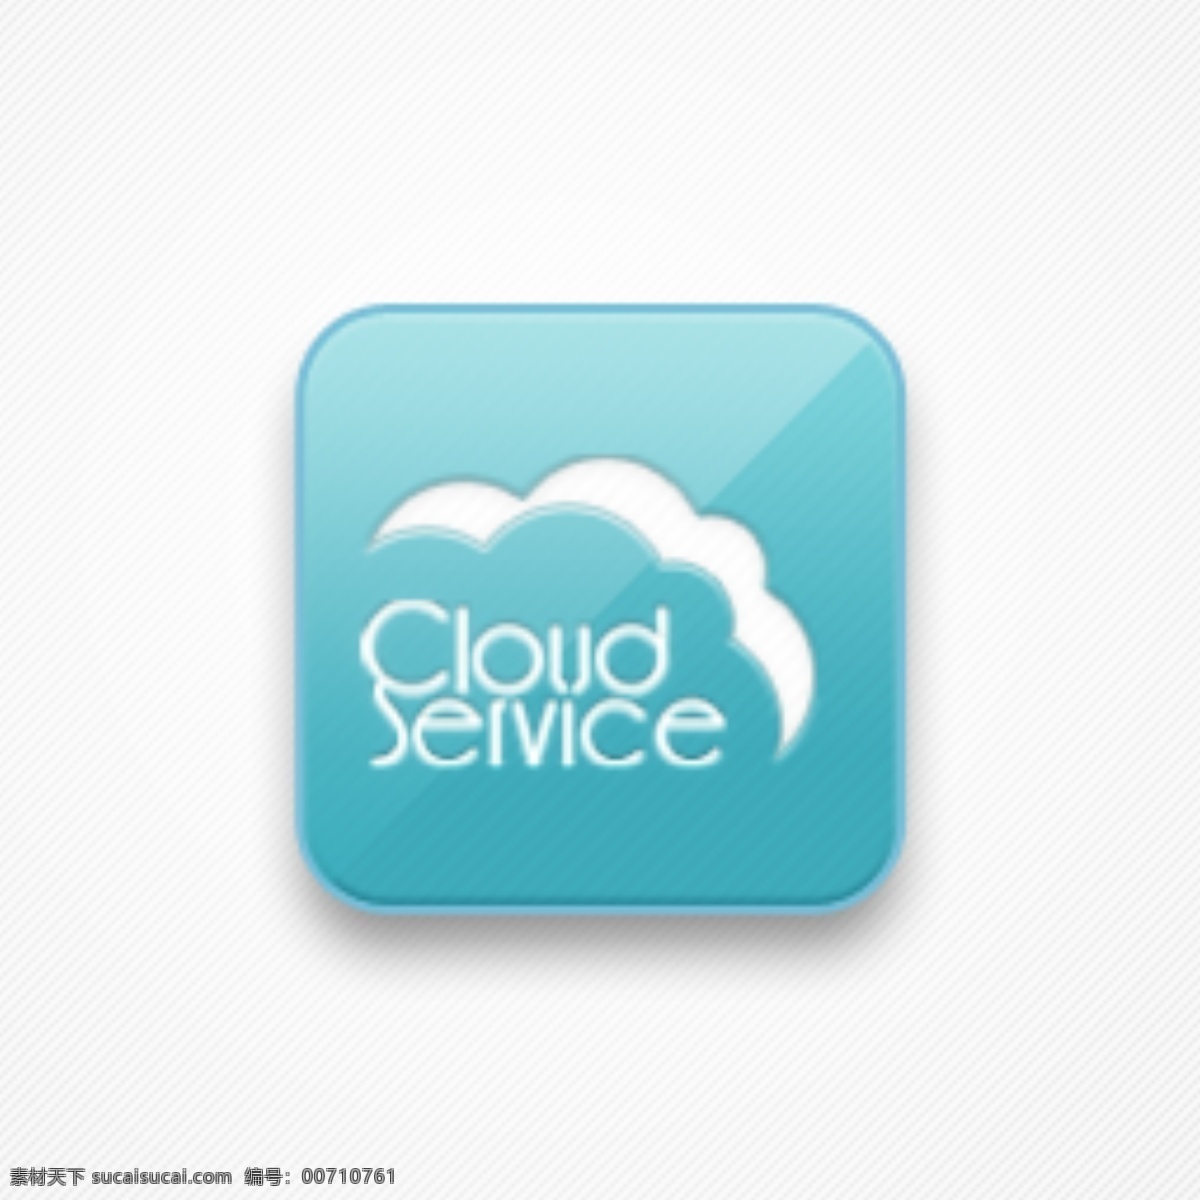 云 服务 图标 logo 其他模板 图标logo 网页模板 源文件 云服务 psd源文件 logo设计